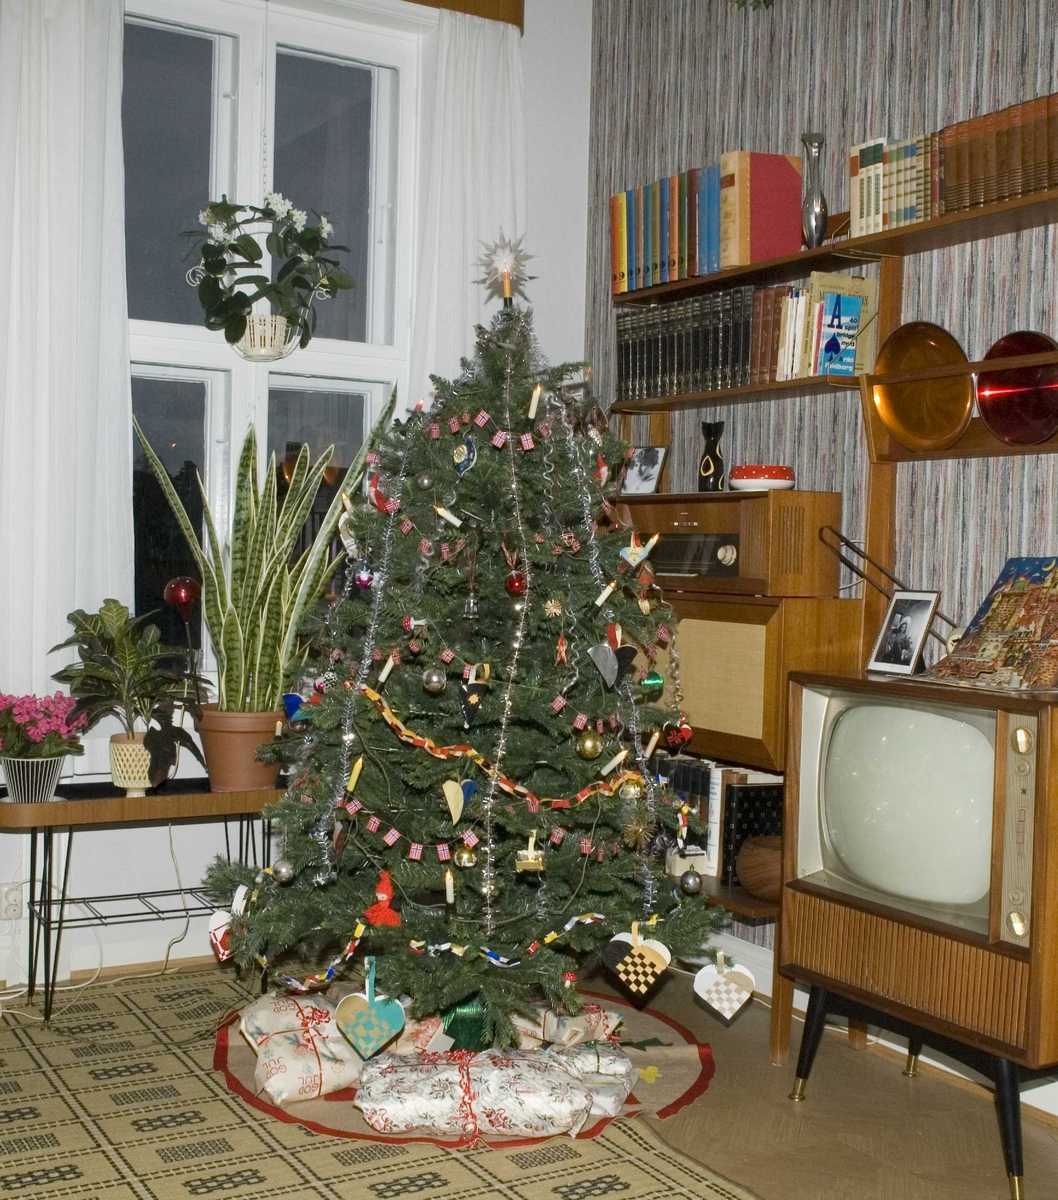 "Teak, TV og tenåringer - 1965". i OBOS-gården, Wessels gate 15. Norsk Folkemuseum, Oslo. Stua med pyntet juletre. Den grå og sorte kurven med rød hank ble laget i 1965.